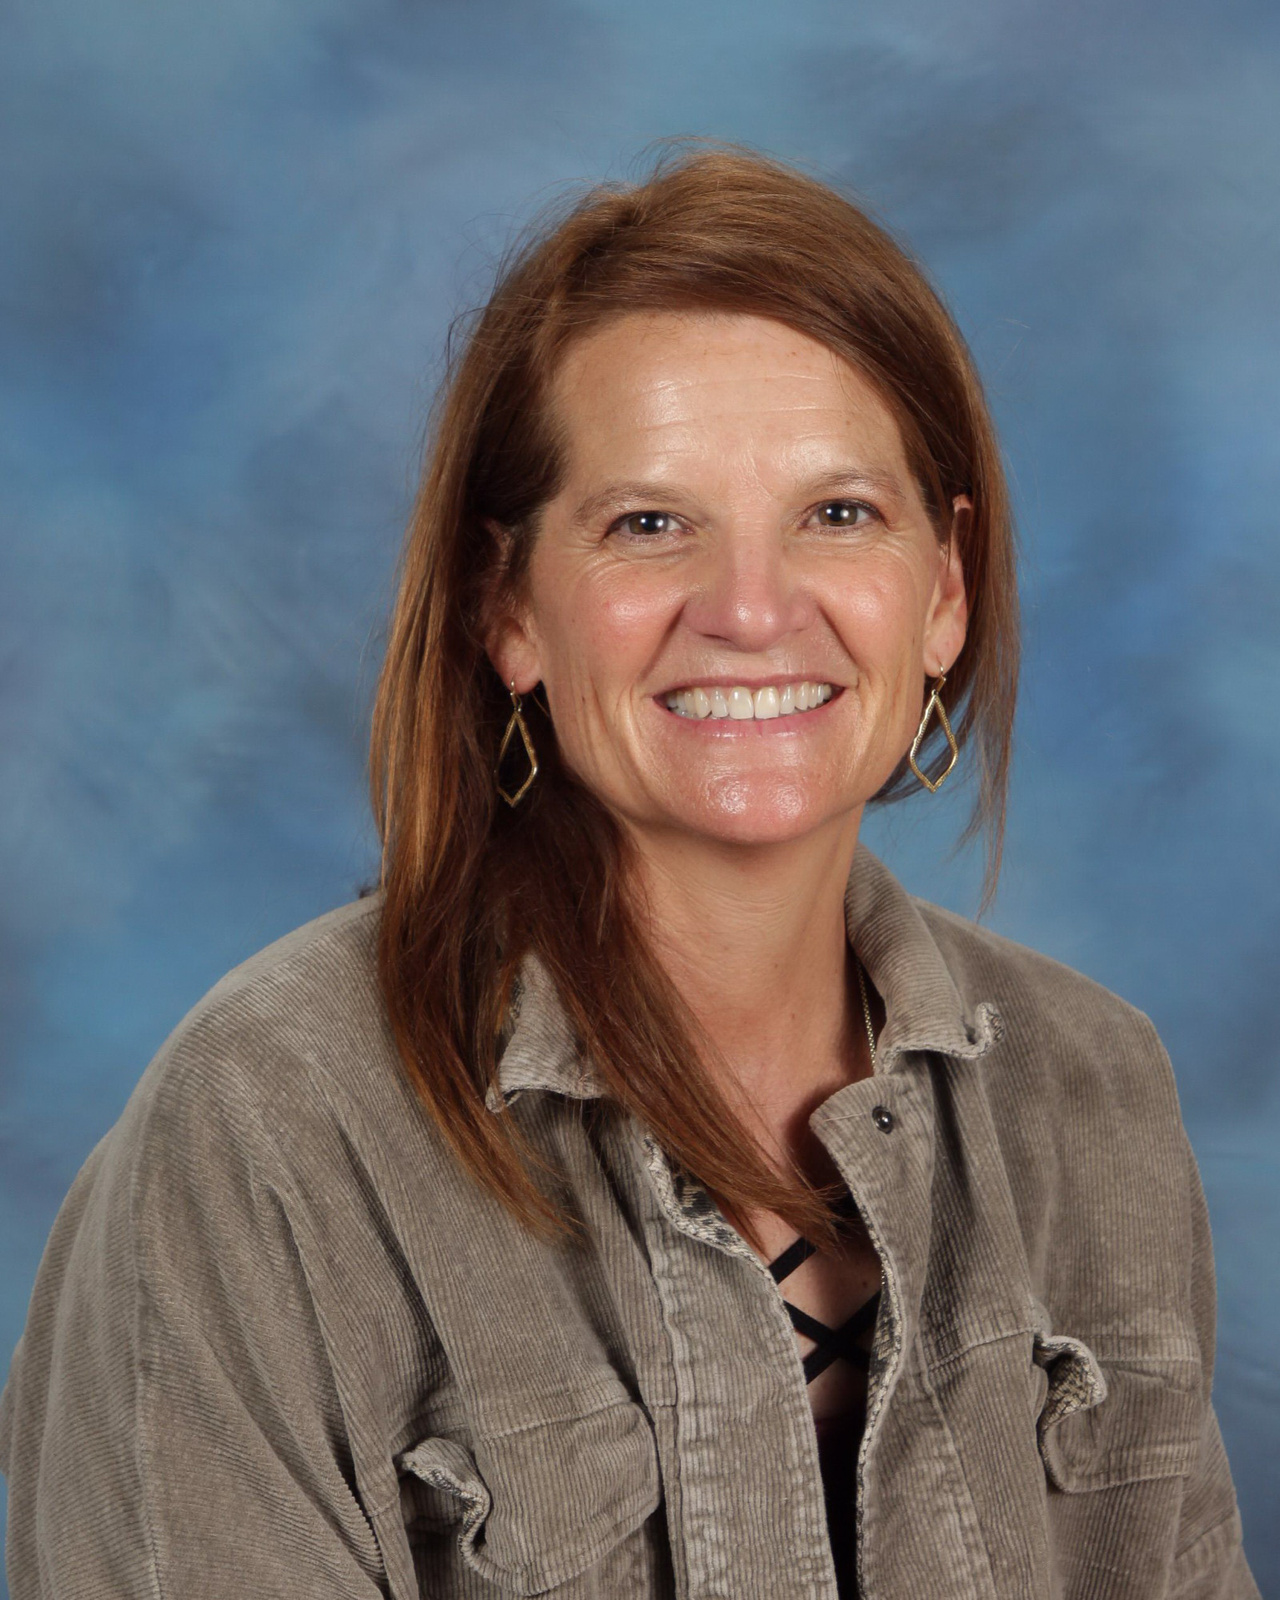 Teacher of the Week - Ms. Leisinger - September 11th